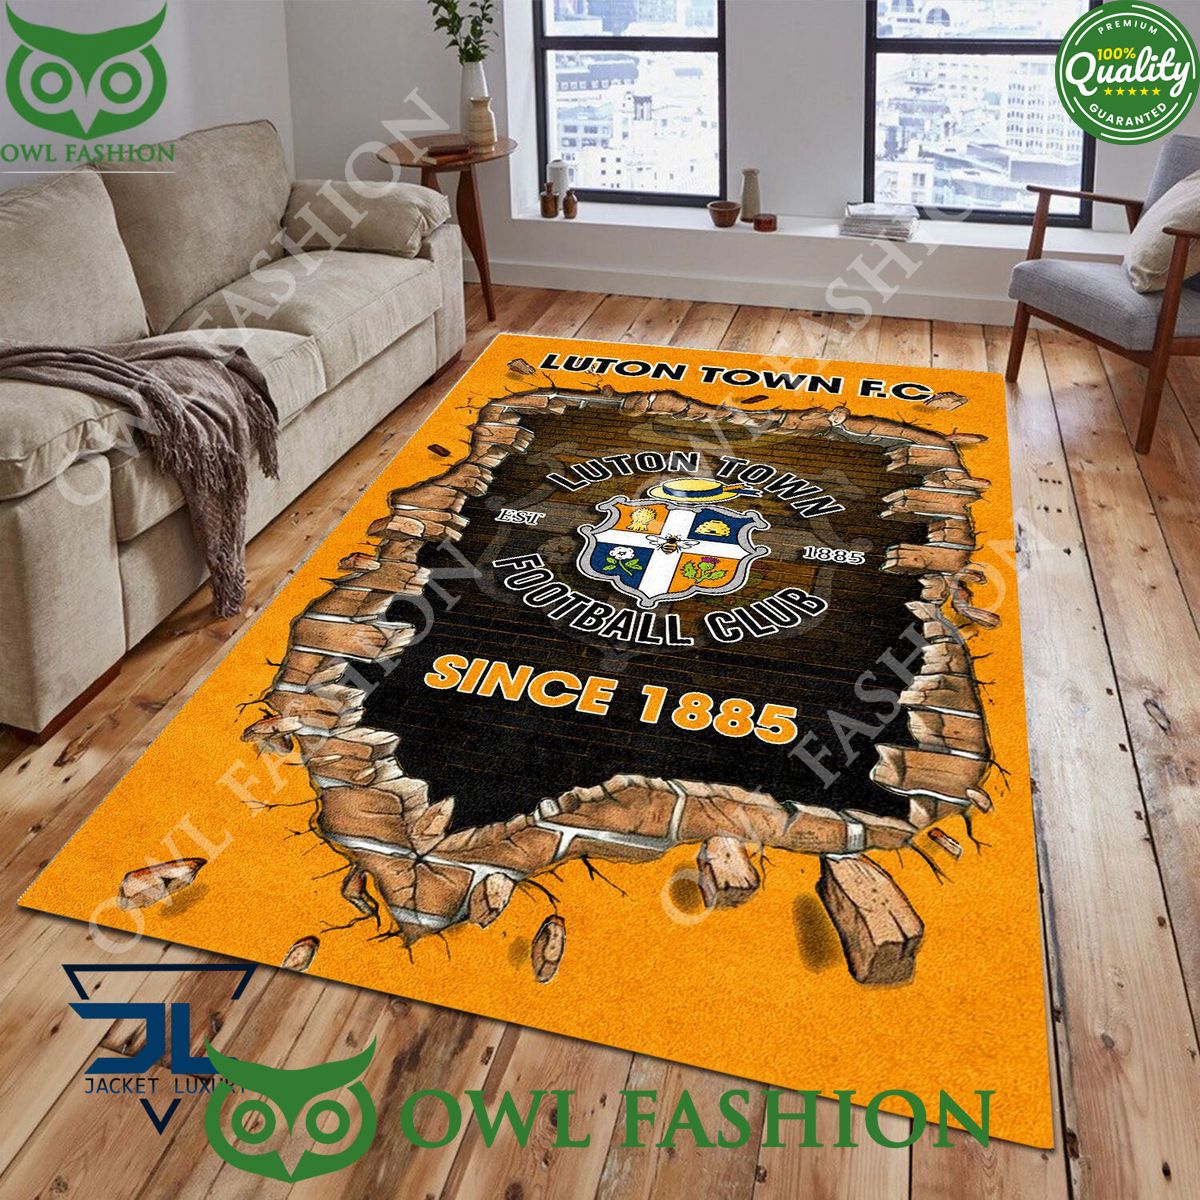 luton town f c 1877 premier league living room carpet 1 xeVs2.jpg